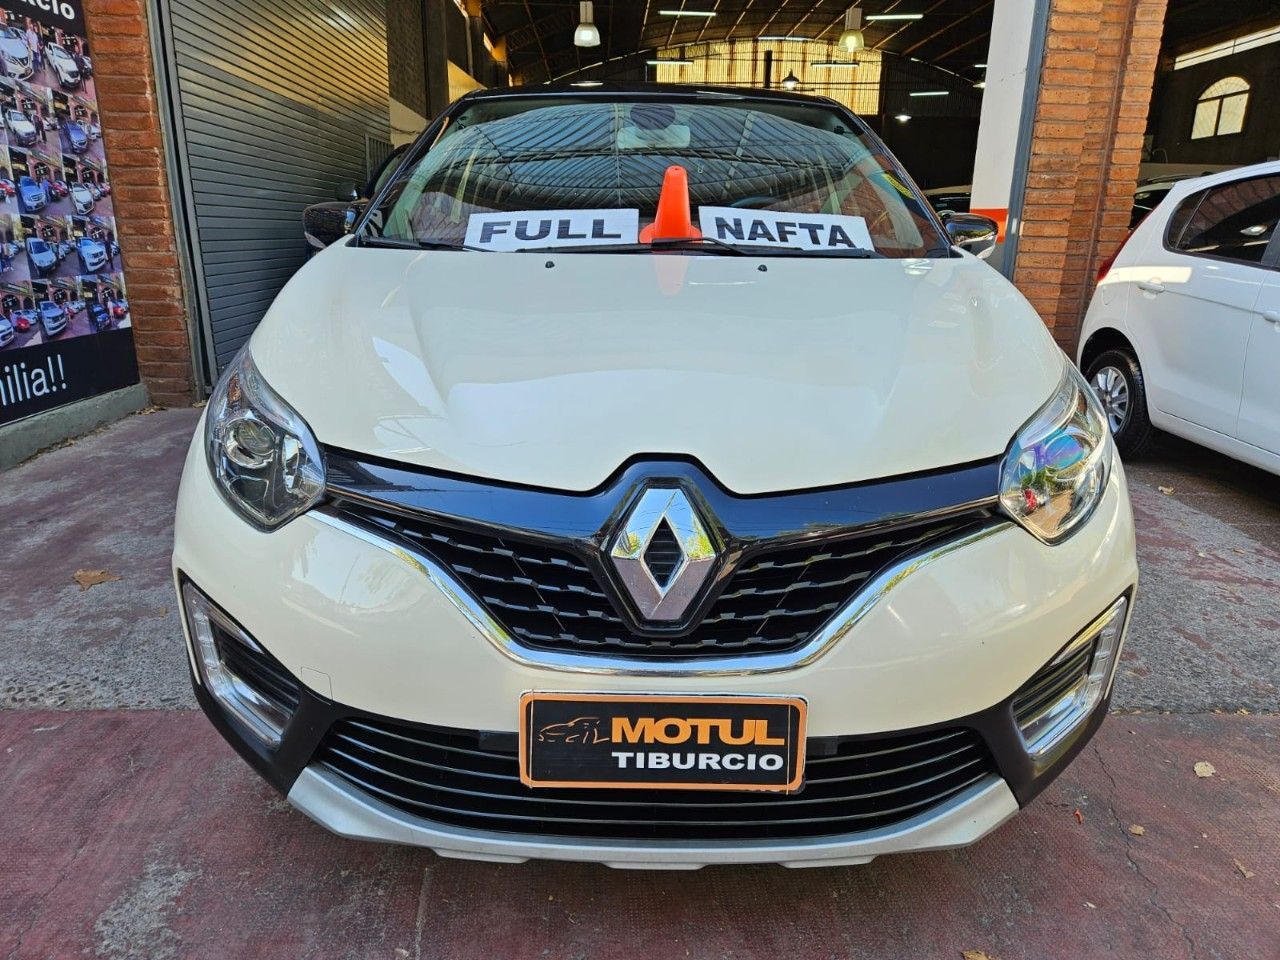 Renault Captur Usado Financiado en Mendoza, deRuedas